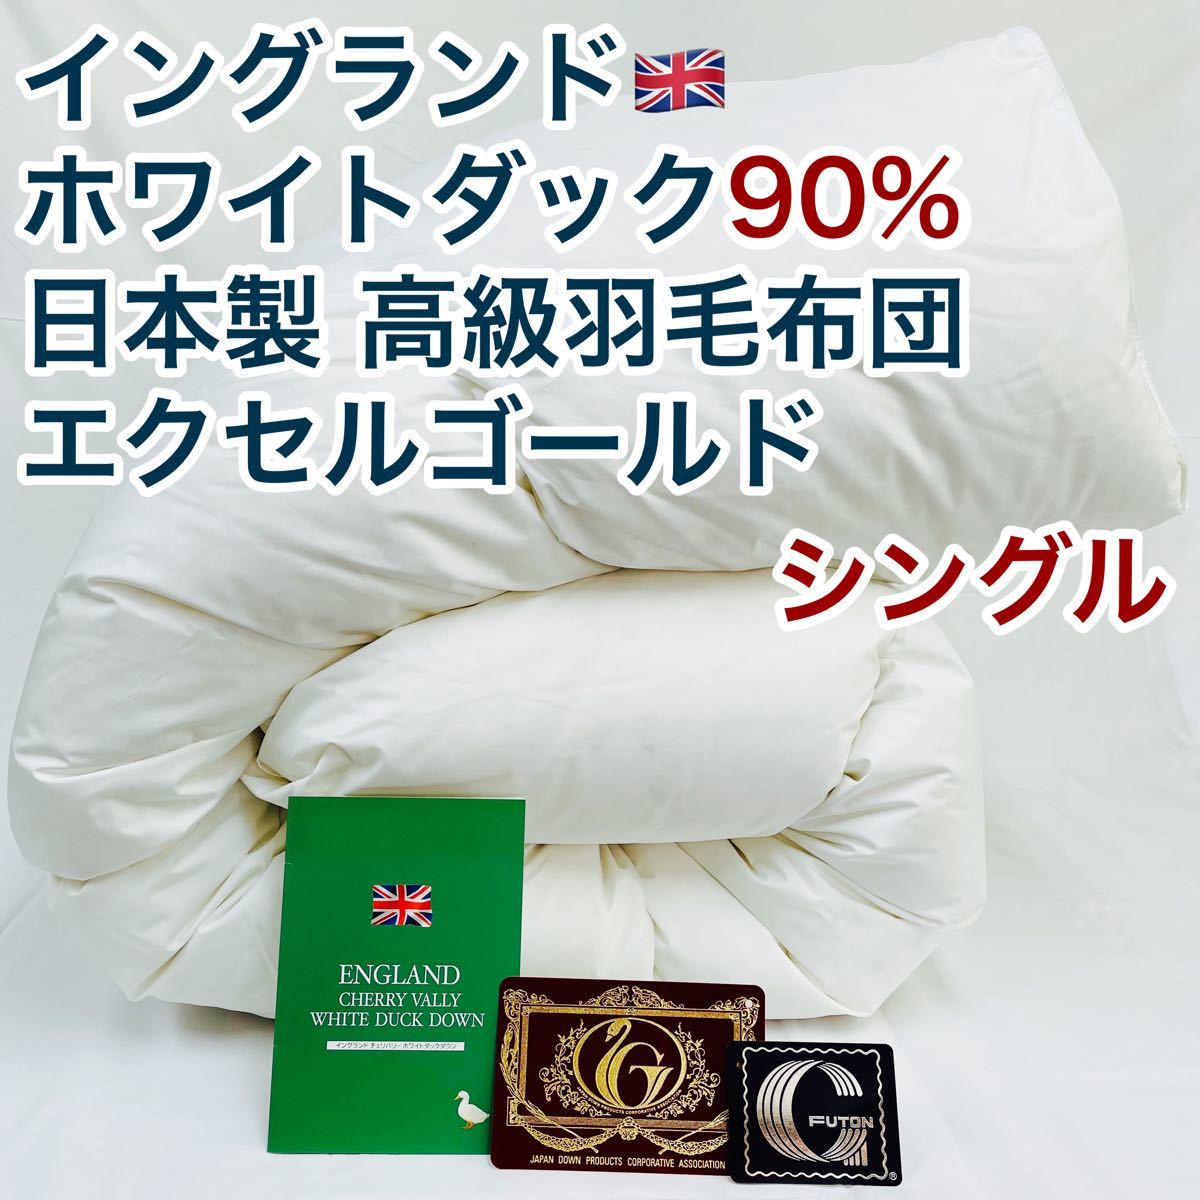 ストアー 羽毛布団 日本製 エクセルゴールド ホワイトダウン90% 増量